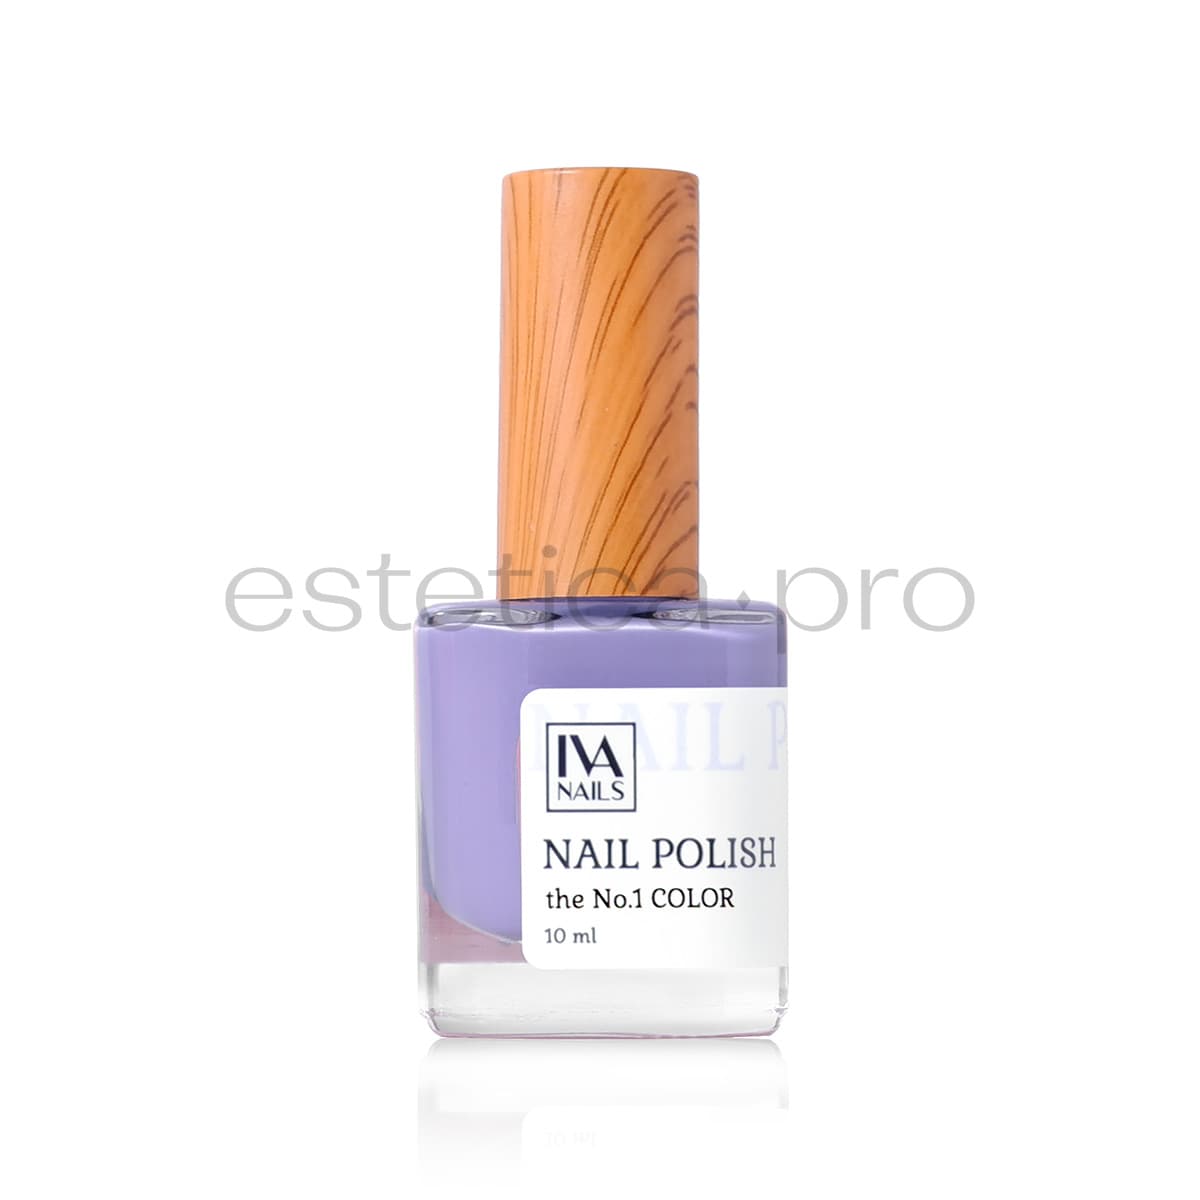 Лак для ногтей Iva Nails 01, 10 мл.